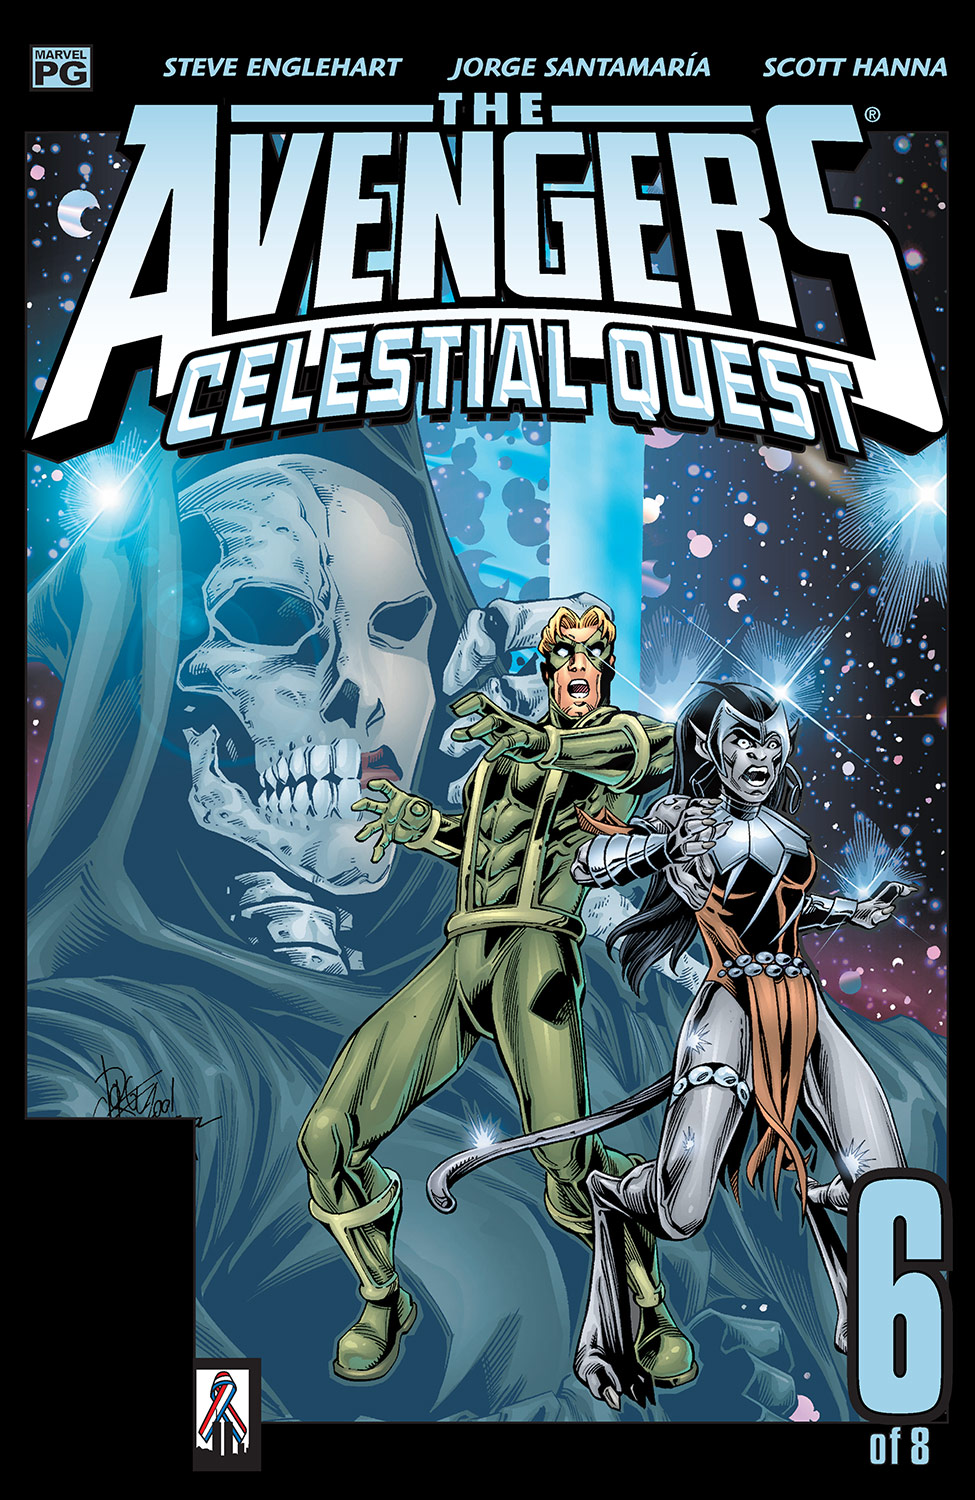 Avengers: Celestial Quest (2001) #6